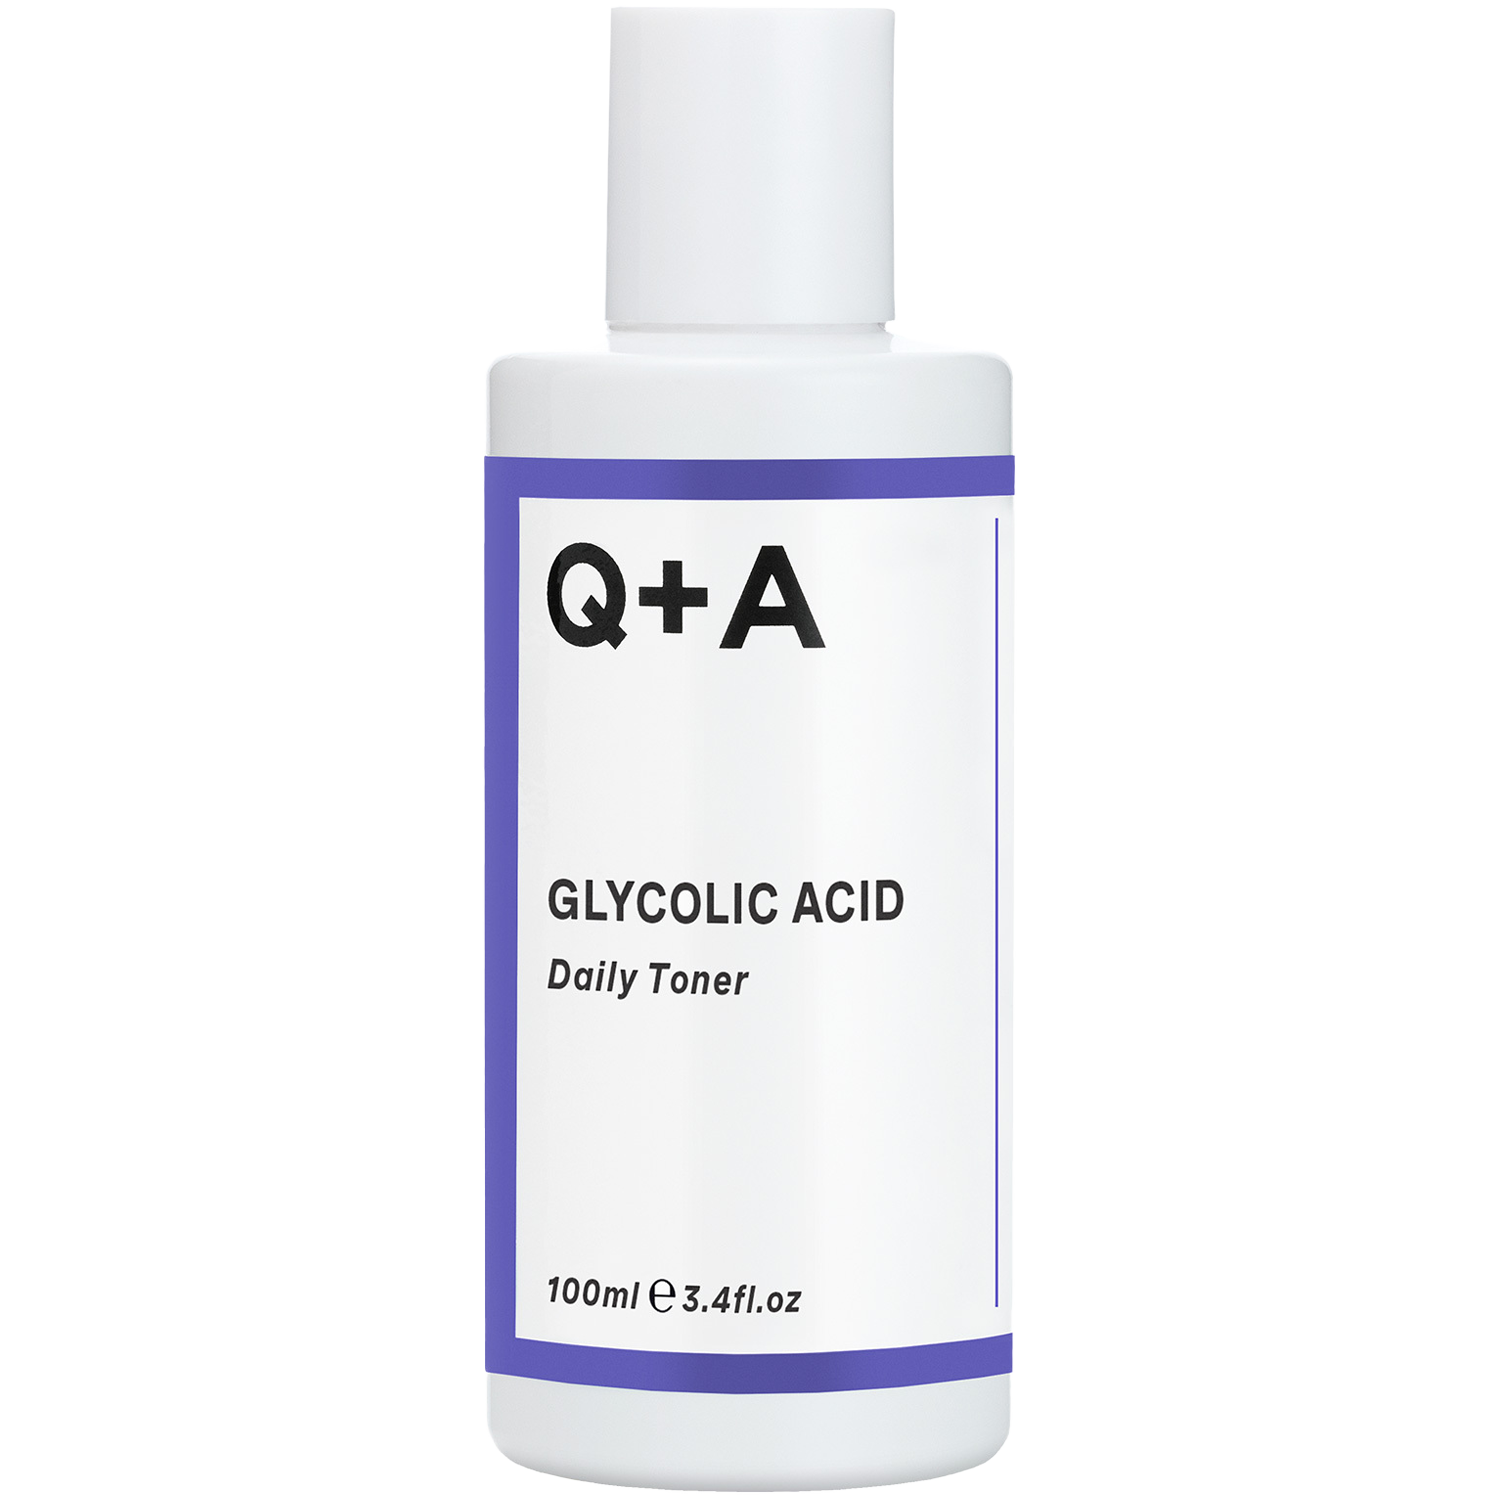 Q+A Glycolic Acid тоник для лица, 100 мл бустер для лица a pieu glycolic acid peeling booster 120 мл